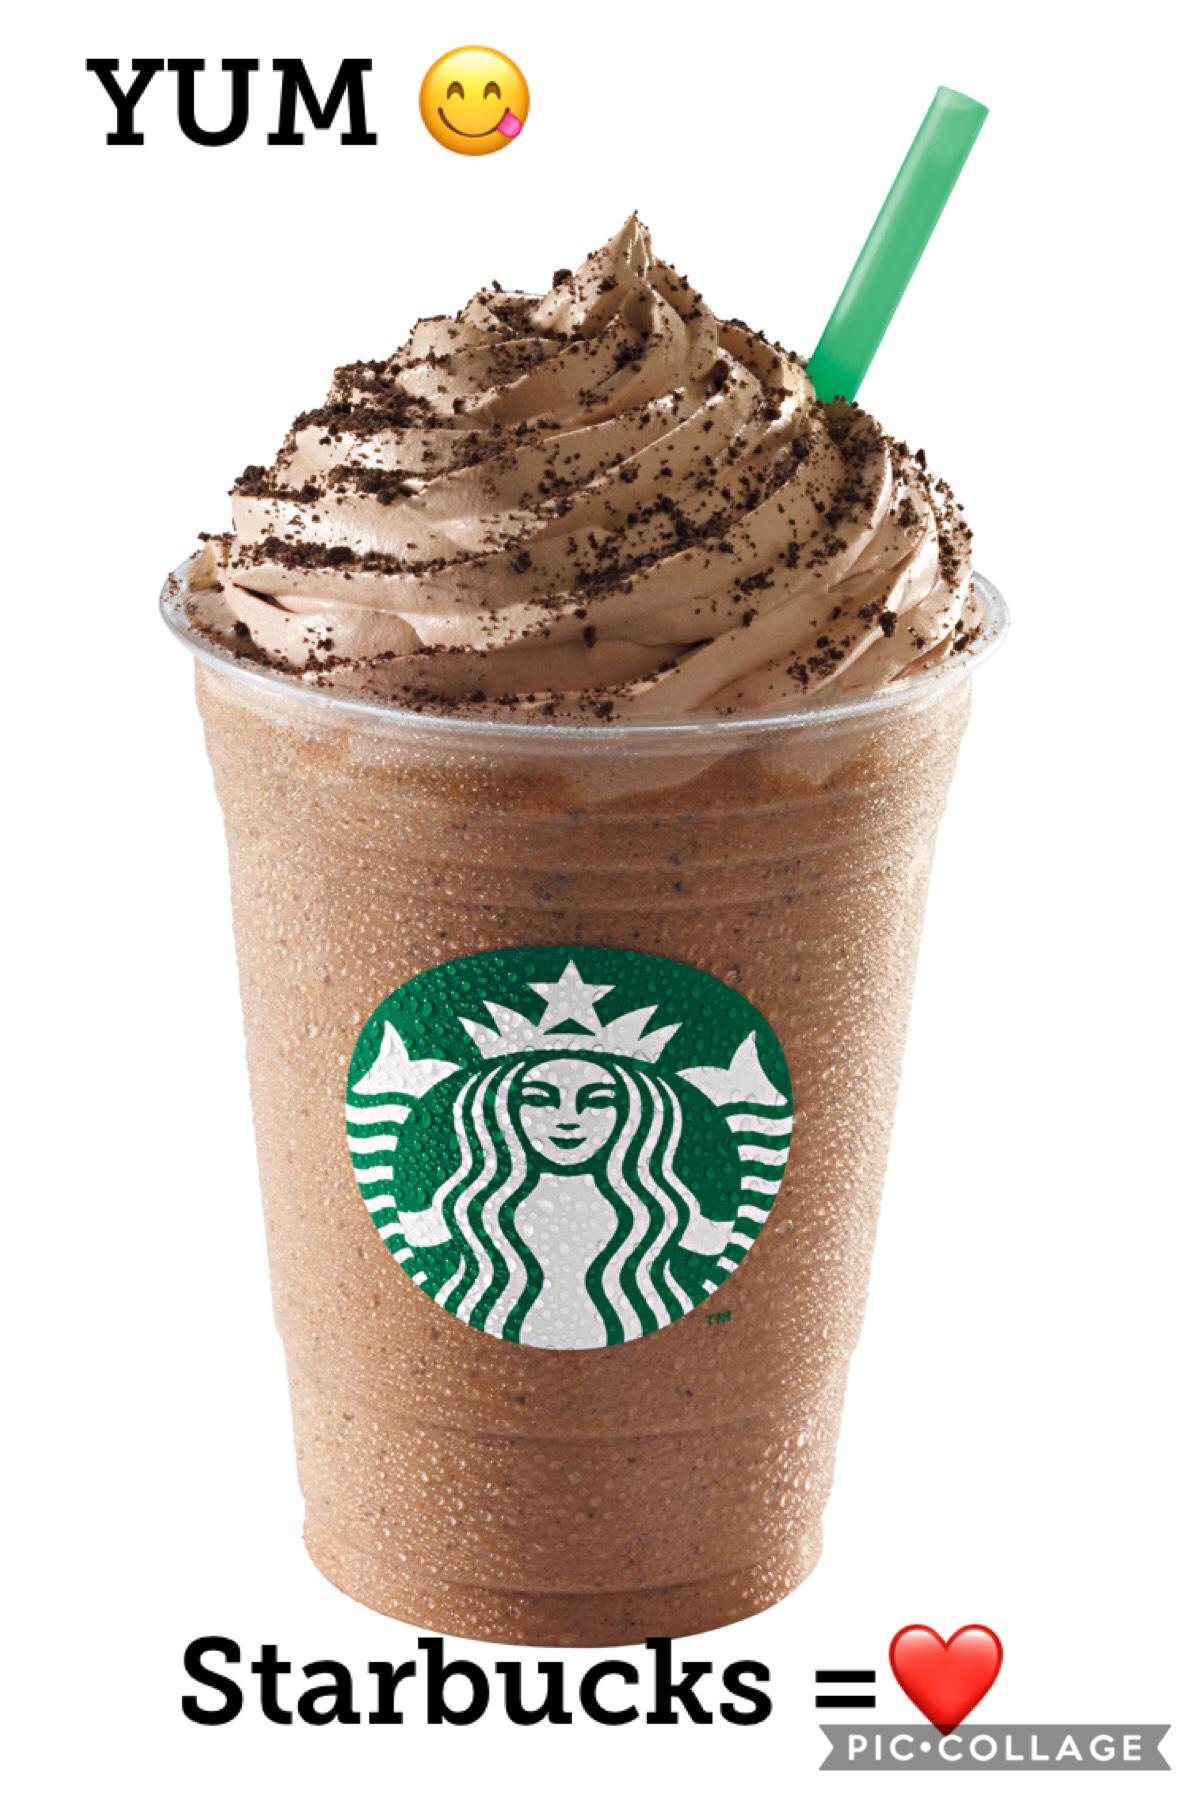 Who loves Starbucks ❤️